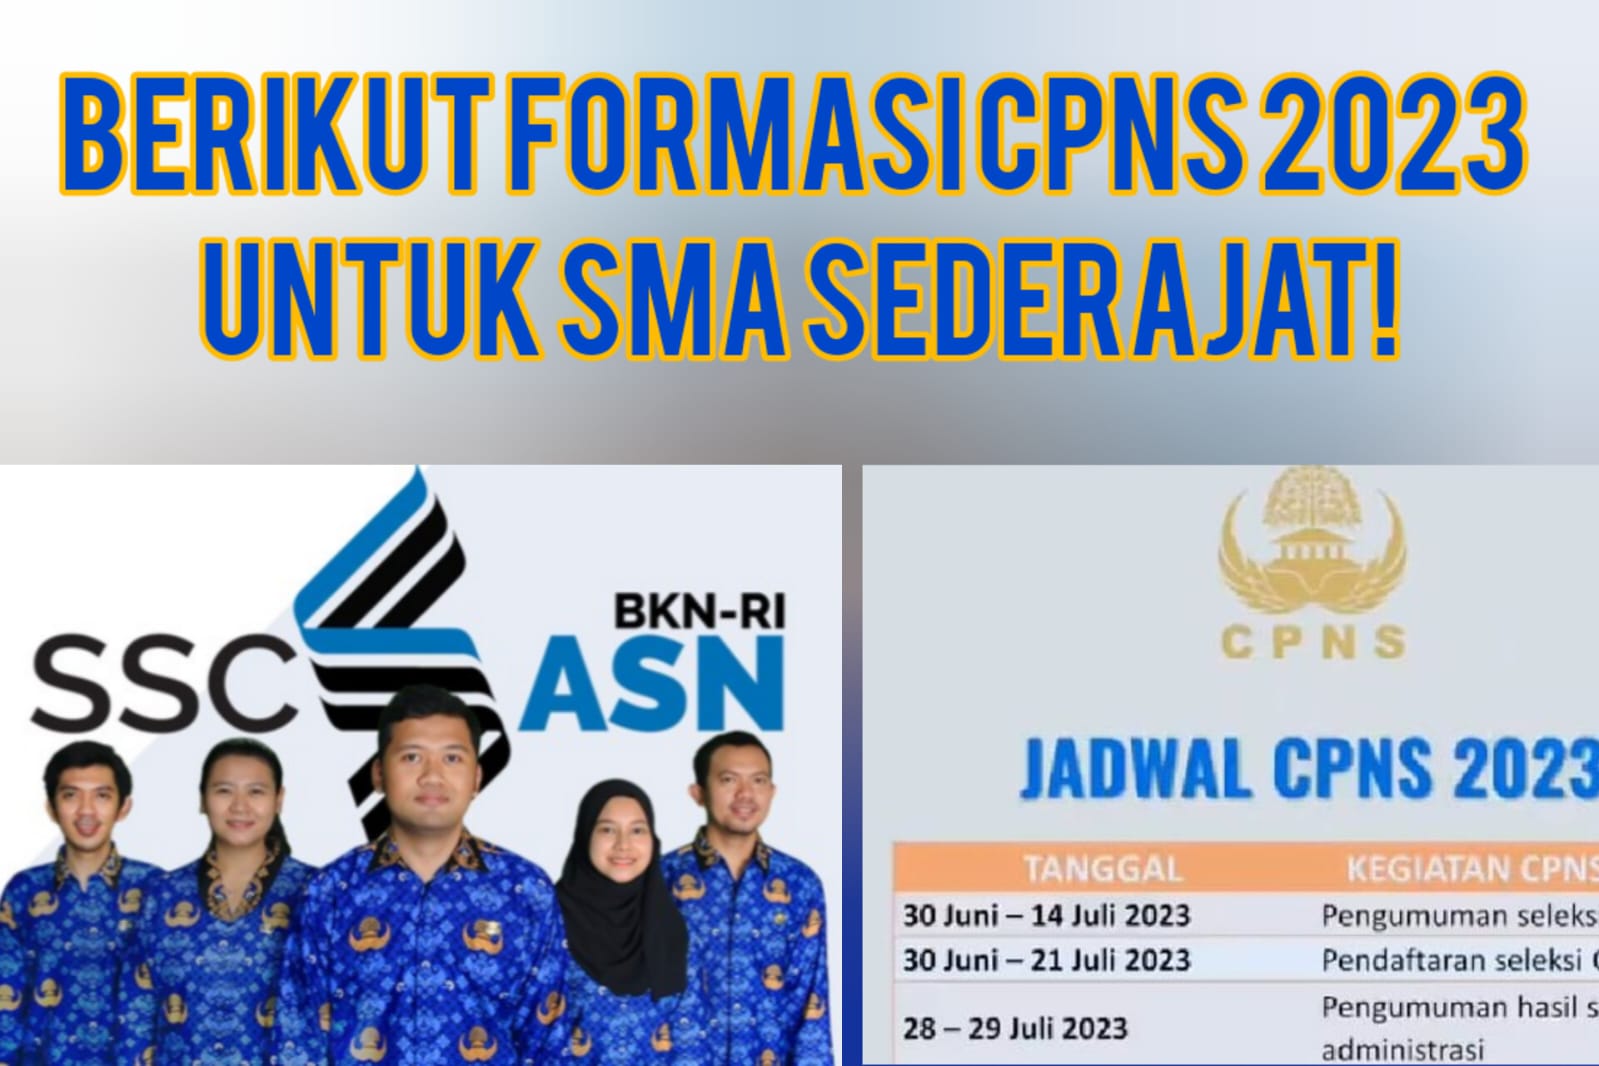 SIAP-SIAP! Juni 2023 Pendaftaran CPNS untuk Lulusan SMA/SMK Dibuka, Berikut Daftar Formasinya...